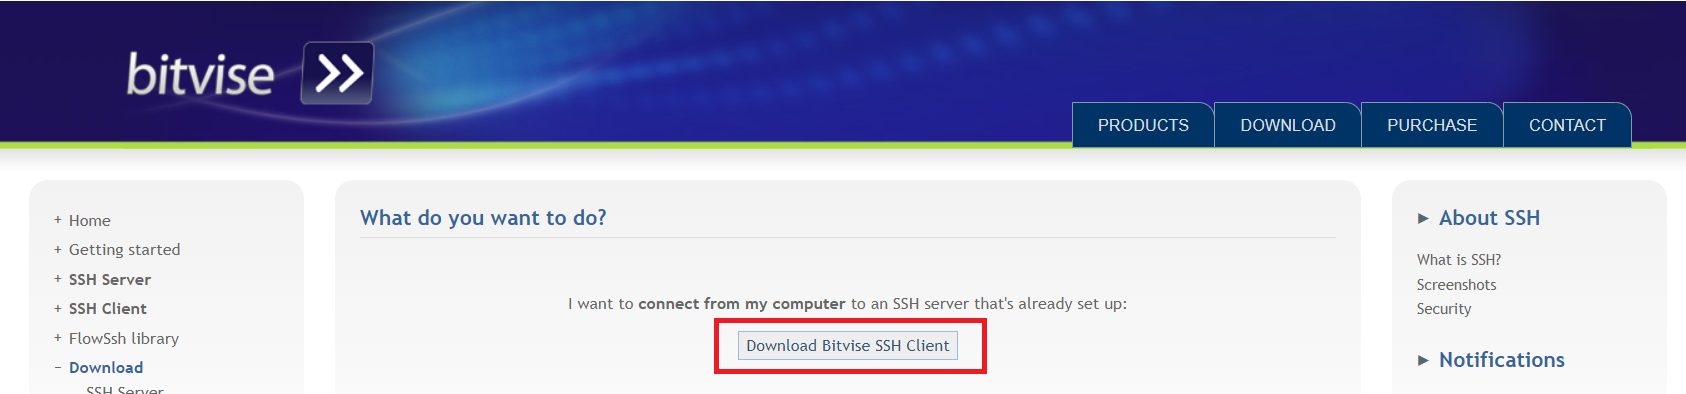 Download Bitvise